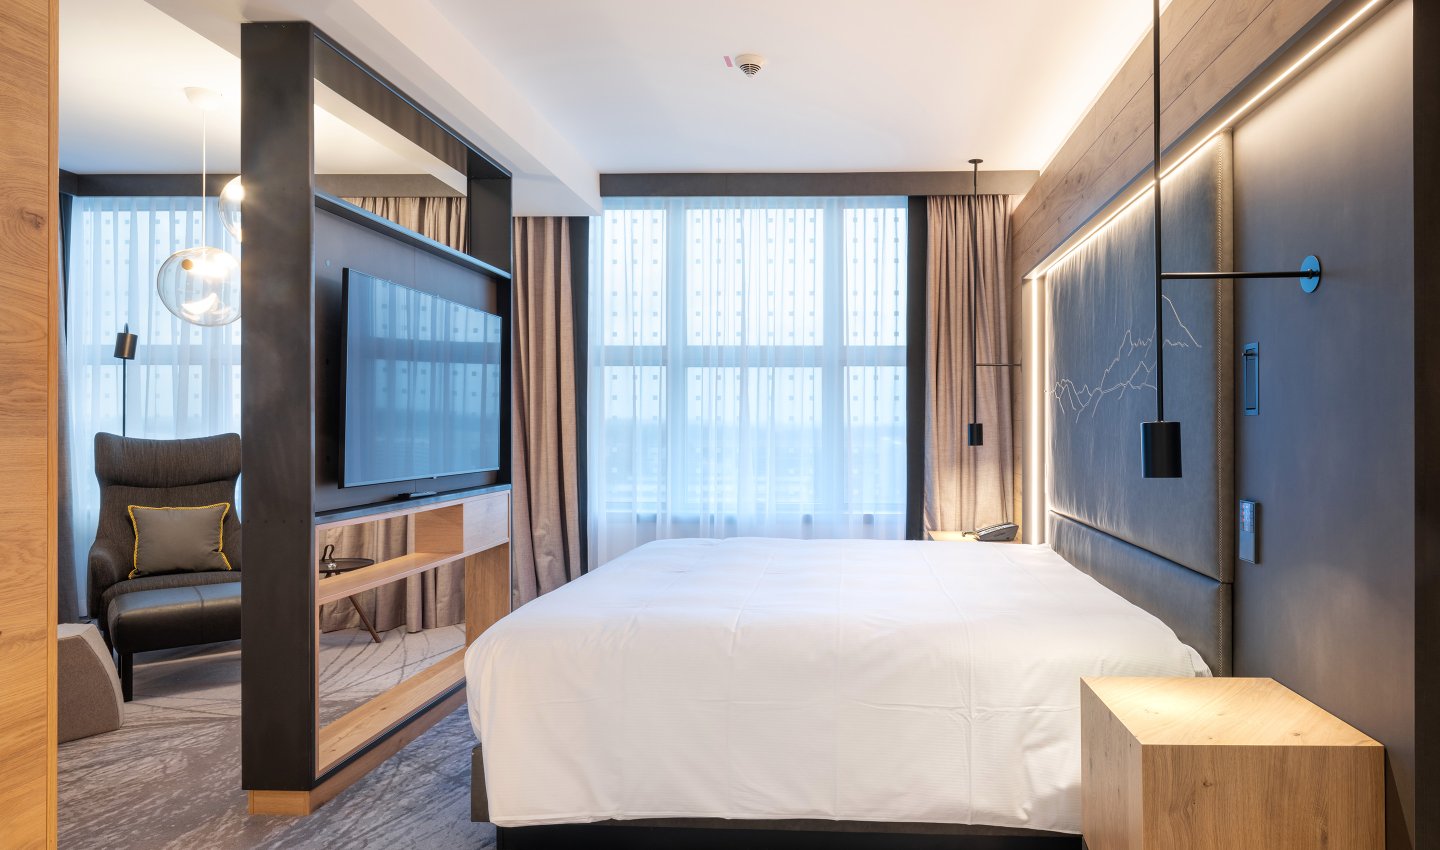 Luxussuite mit großem Bett, designer Möbel und freistehenden Fernseher in Holzkonstruktion - Hilton Hotel Munich Airport